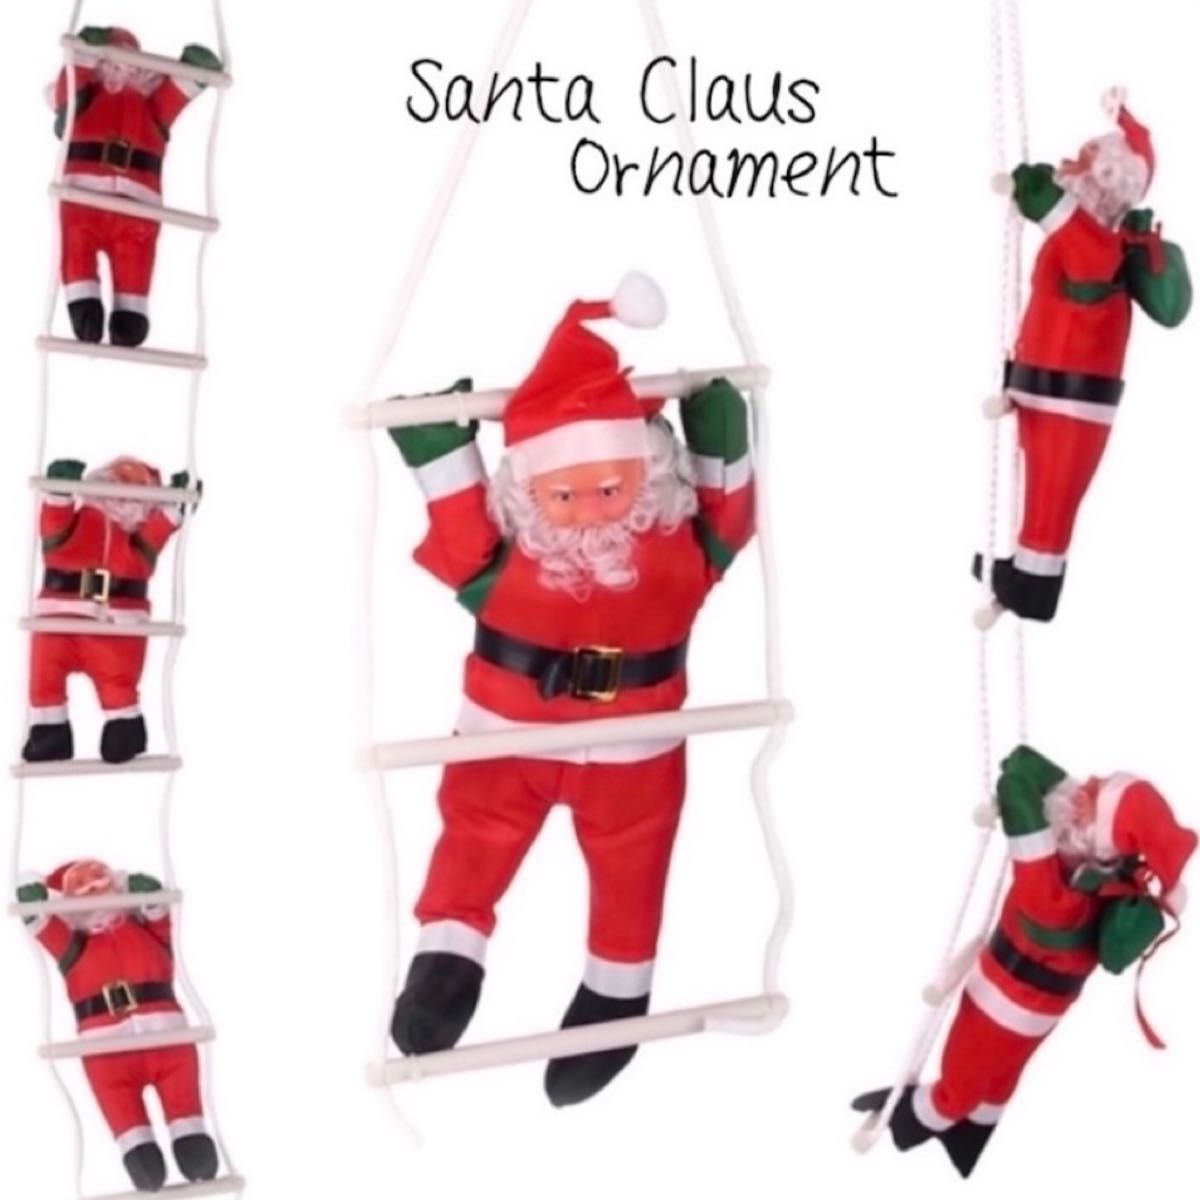 クリスマス ツリー 飾り 3人 はしご サンタクロース ぬいぐるみ オーナメント 北欧雑貨 お洒落 雑貨 インテリア お洒落